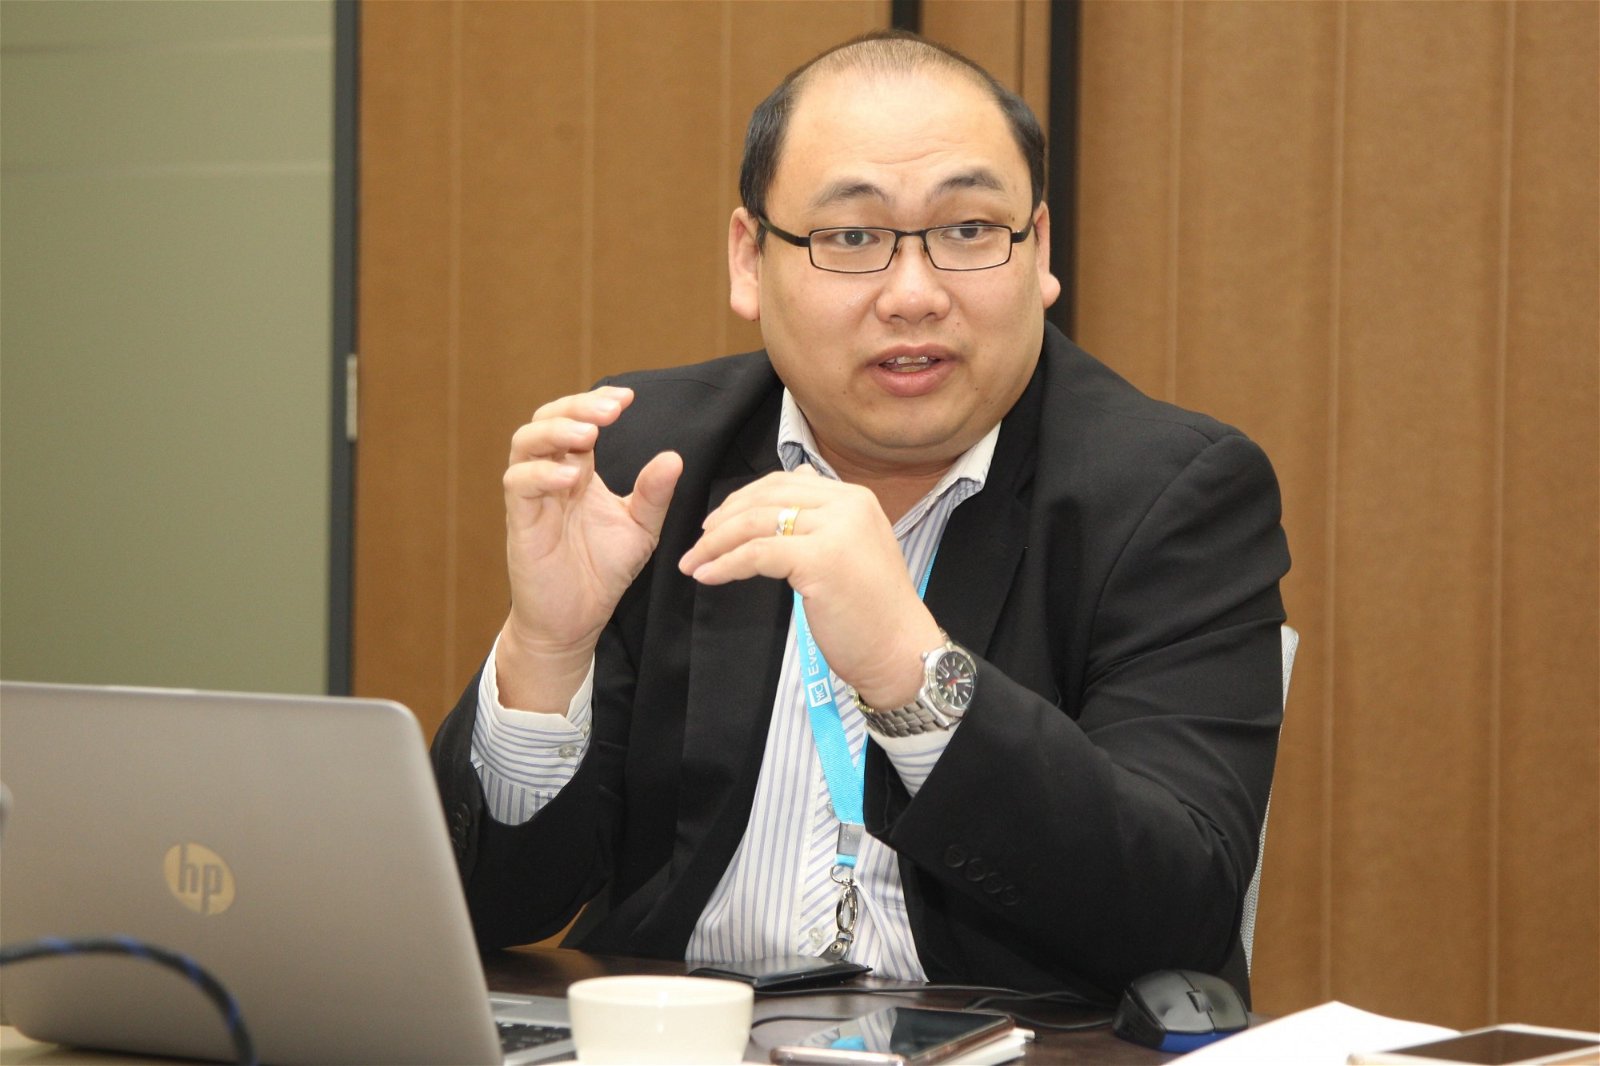 陈顺达(Jacky Chan)是现任YYC会计所消费税咨询总监，亦是马来西亚会计协会（MIA）及英国特许公认会计师公会（ACCA）的成员，他也是也是马来西亚人力资源发展公司（Pembangunan Sumber Manusia Berhad，PSMB)所承认的合格培训讲师之一。